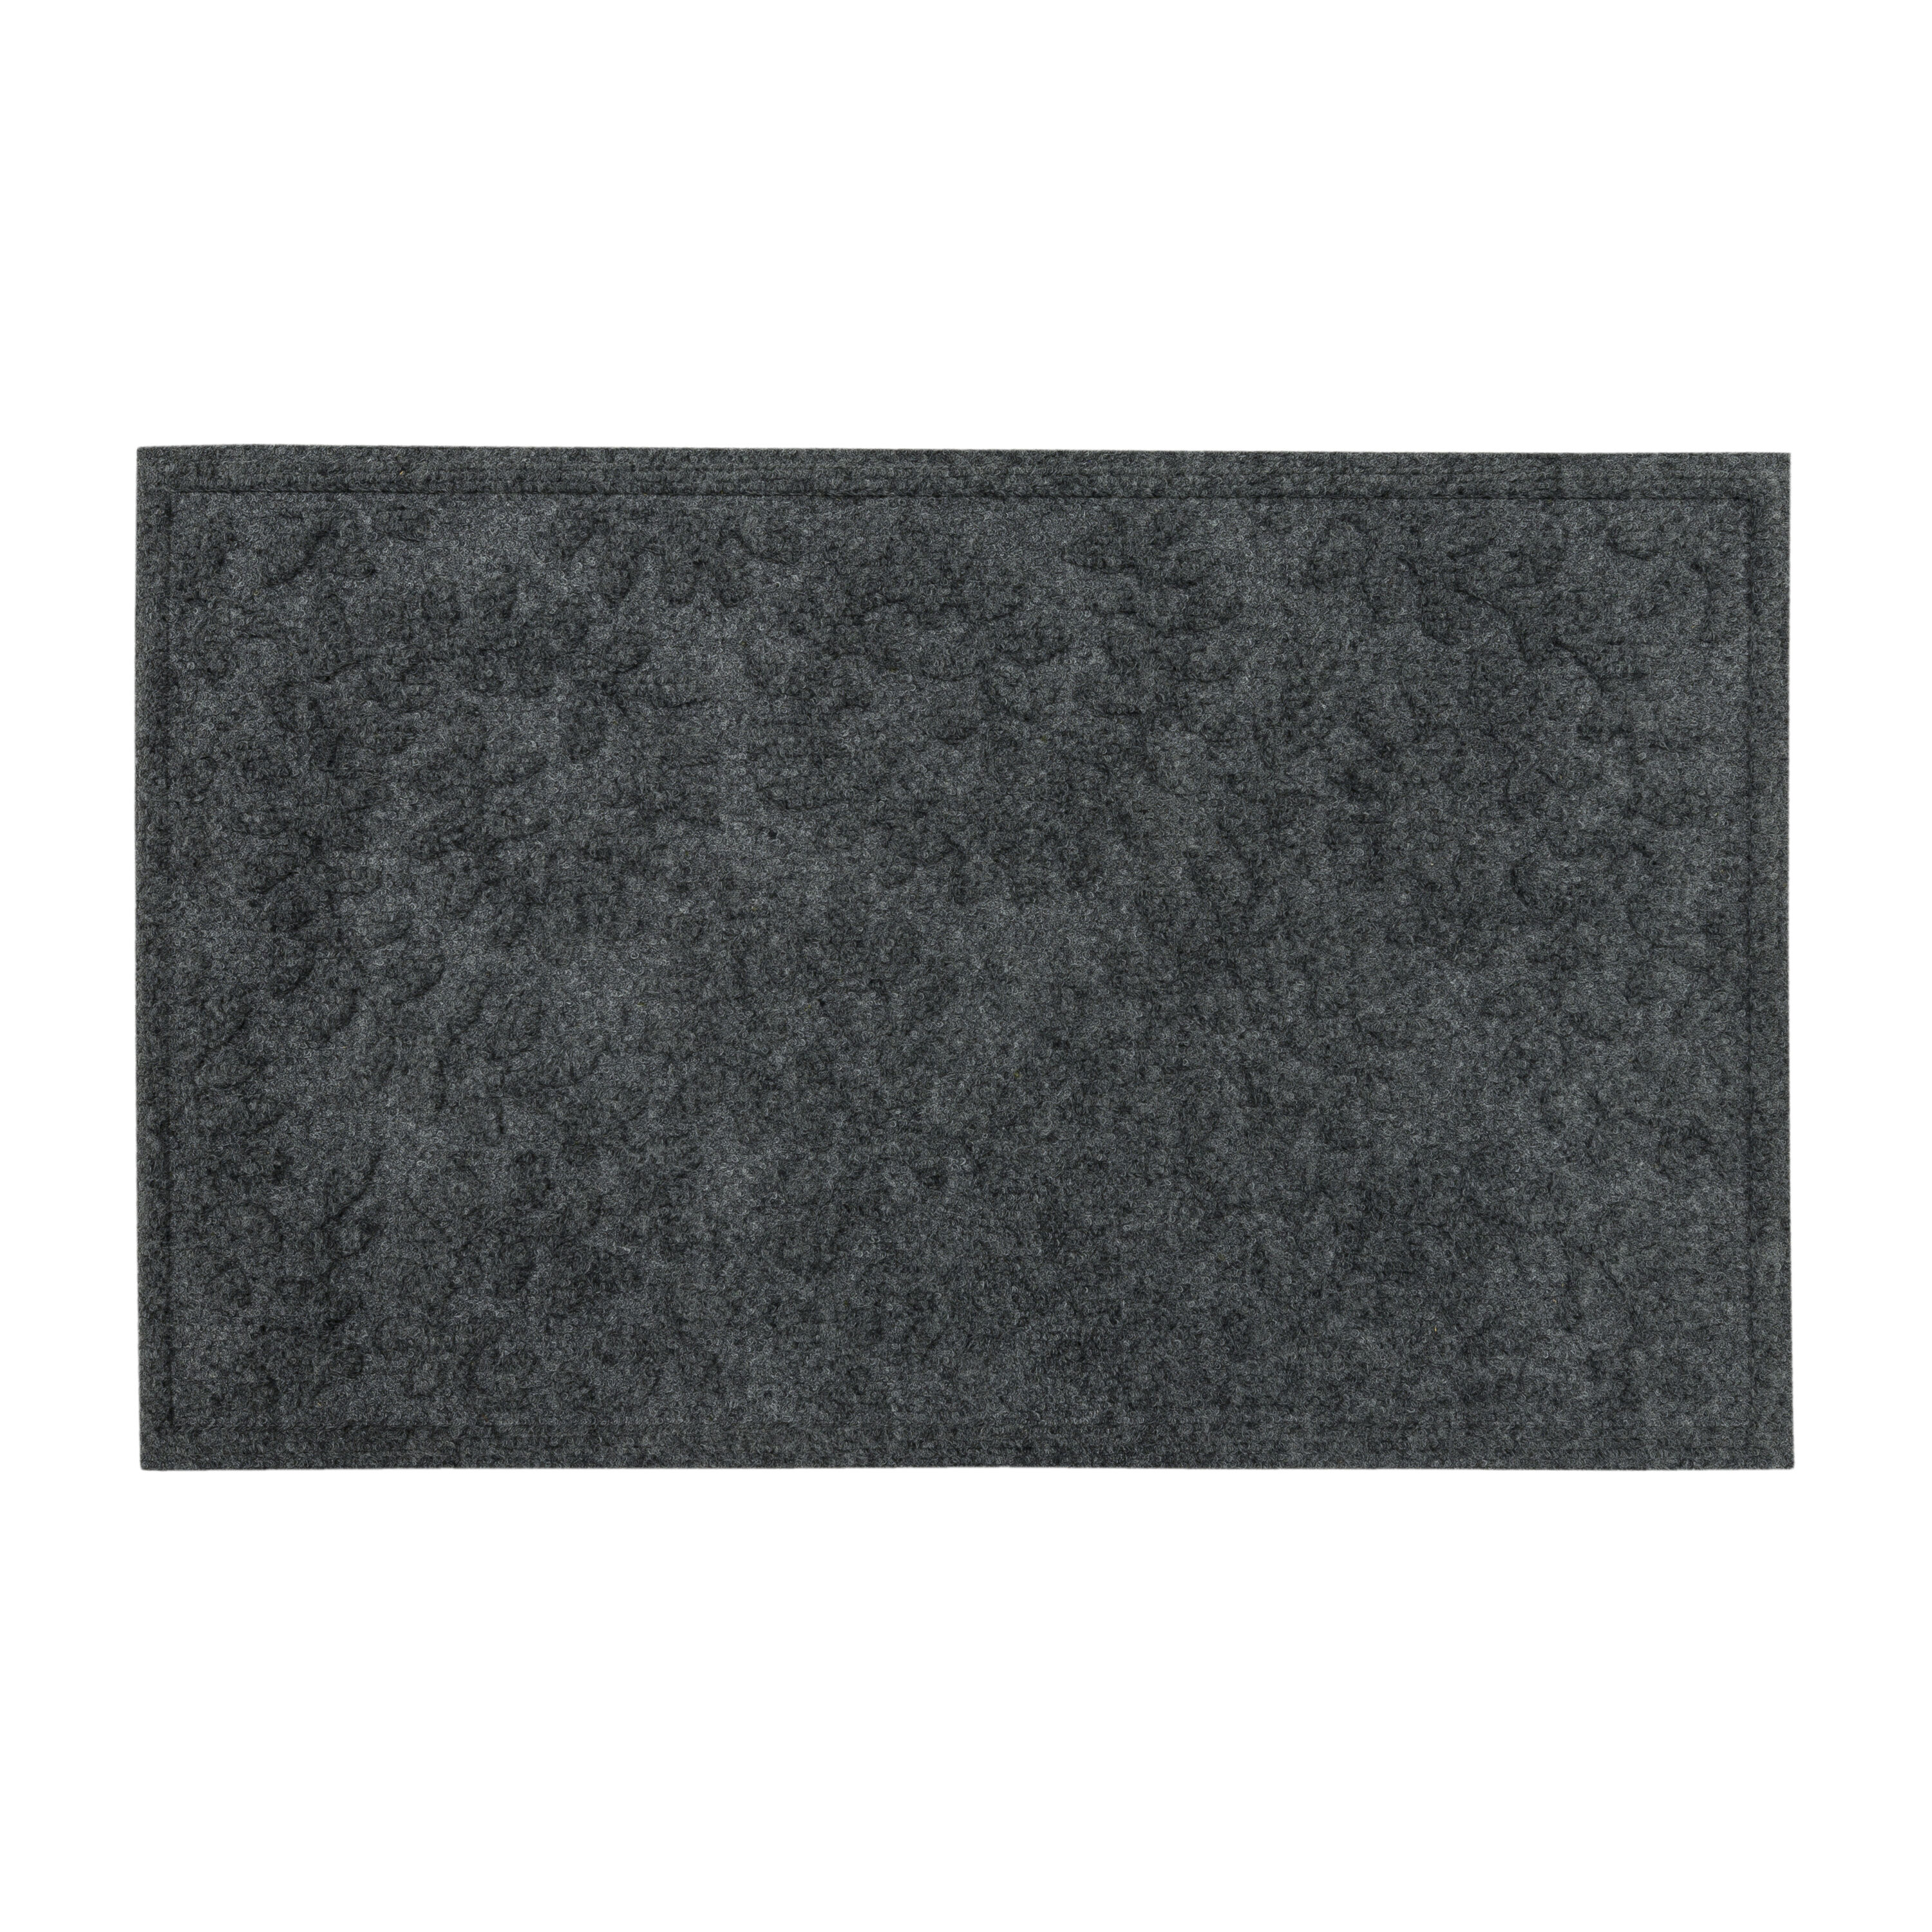 allen + roth 2-ft x 3-ft Black Rectangular Indoor Door Mat in the